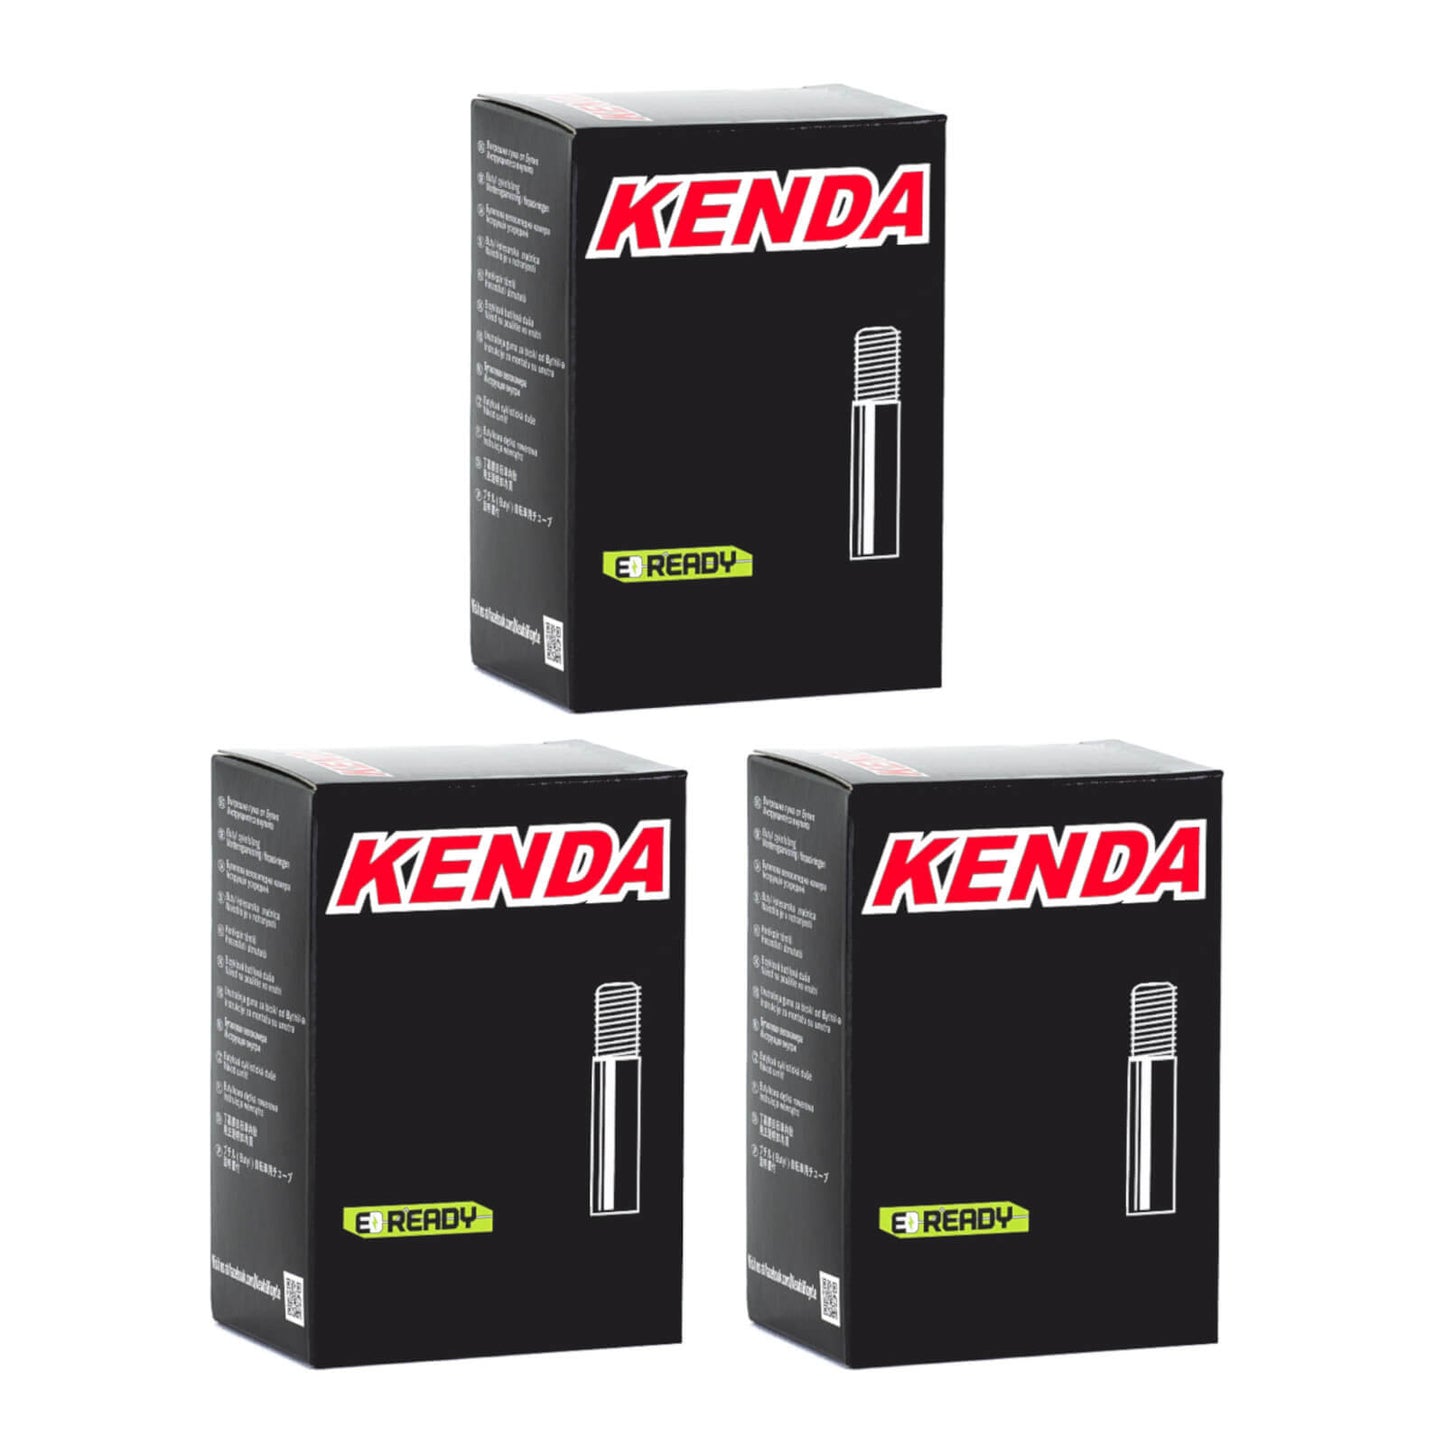 Kenda 26x1.9-2.125" 26 Inch Schrader Valve Bike Inner Tube Pack of 3